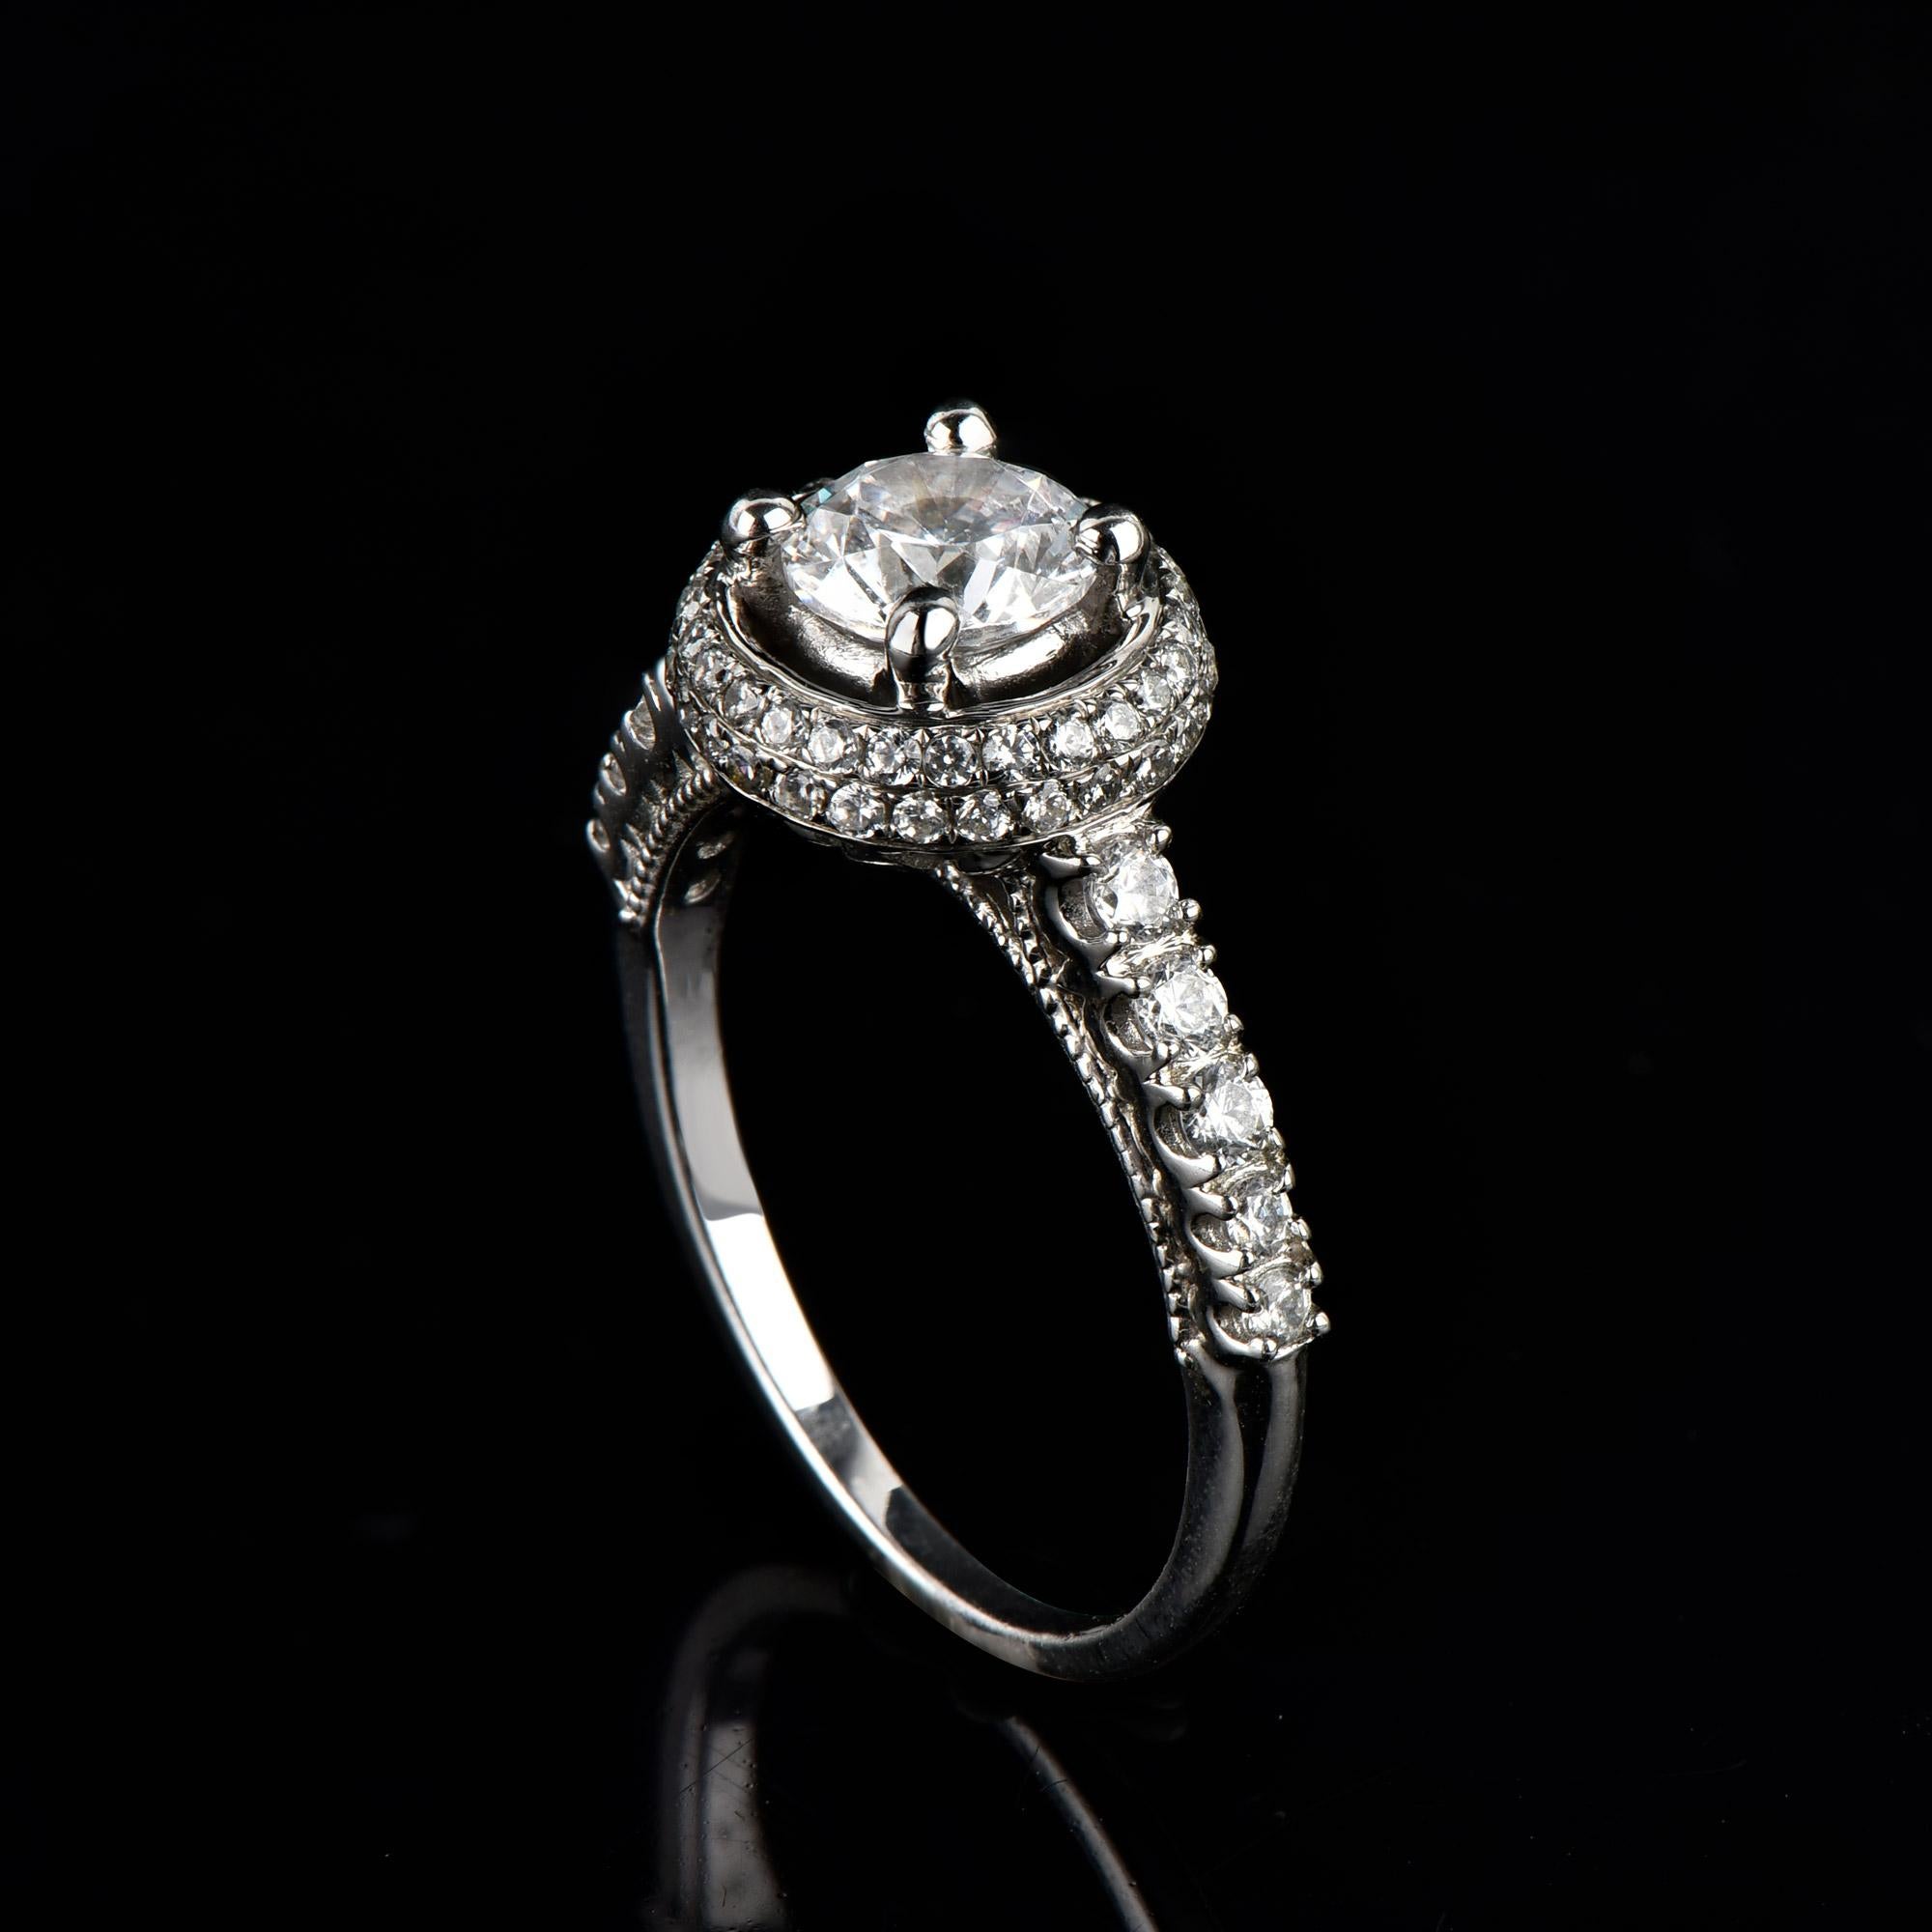 Véritablement exquise, cette bague de fiançailles en diamant ne manquera pas d'être admirée pour la beauté classique et l'élégance inhérentes à son design, qui comprend une pierre centrale de 0,75 ct et une monture en diamant de 0,50 ct, ainsi que